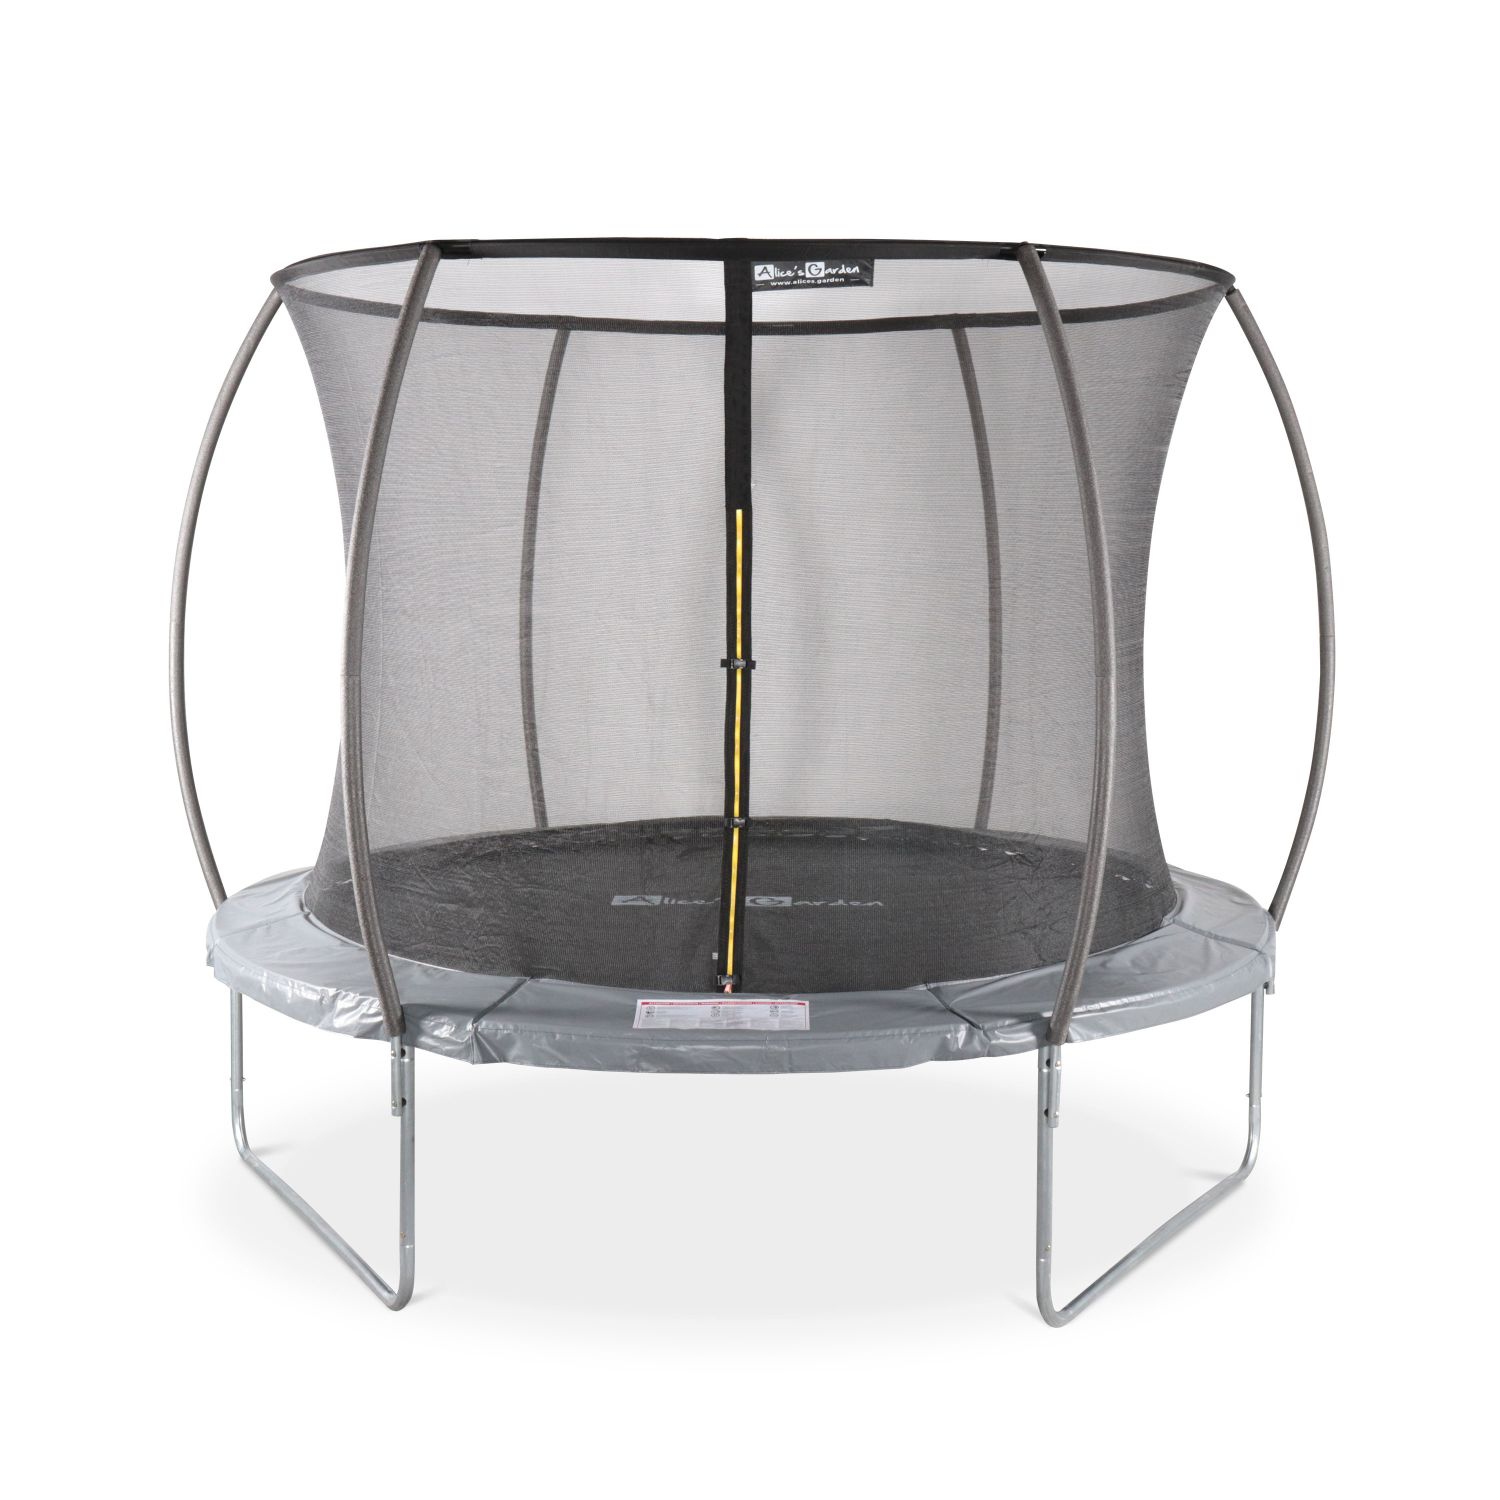 En acier Echelle pour trampoline de 305 à 430 cm de diamètre | Normes EU. Alices Garden Qualité PRO